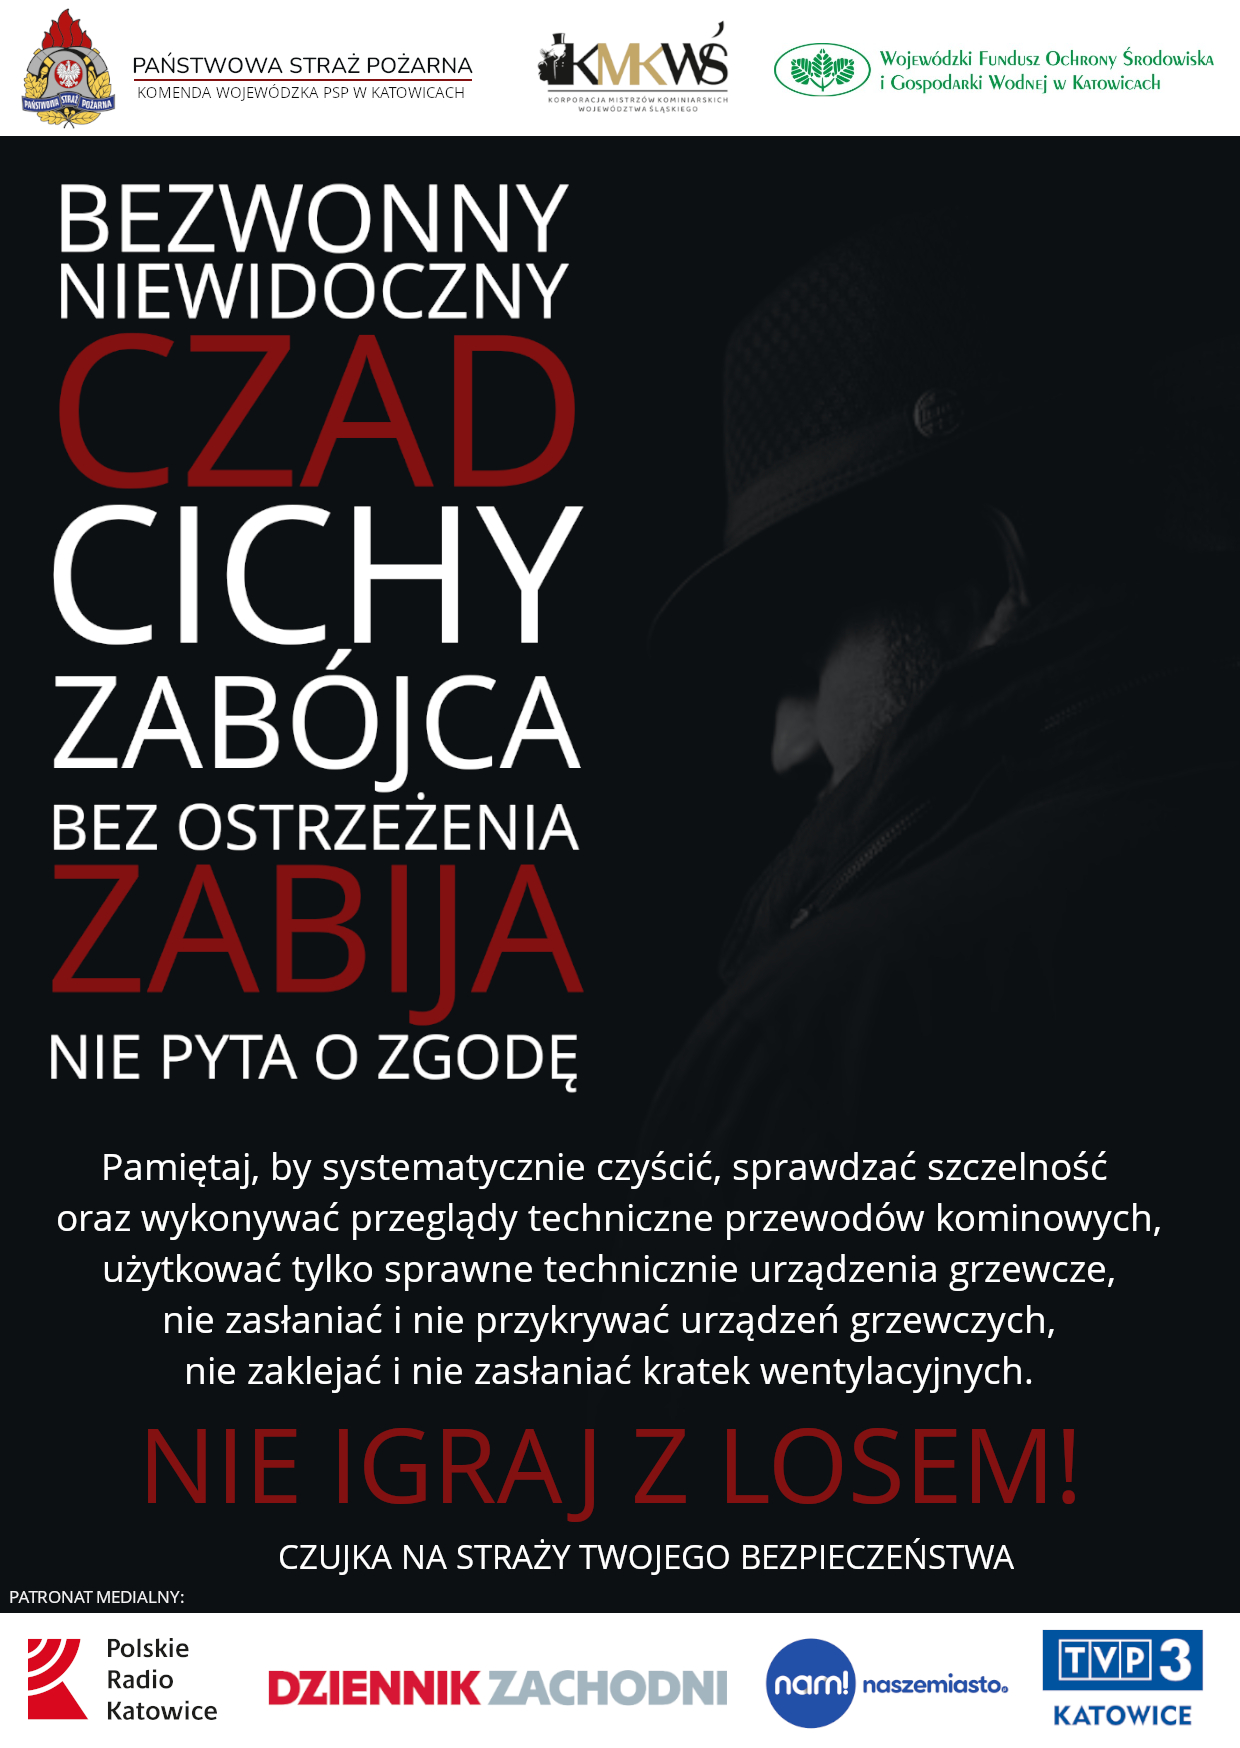 Nie igraj z losem - plakat kampanii, źródło: gov.pl